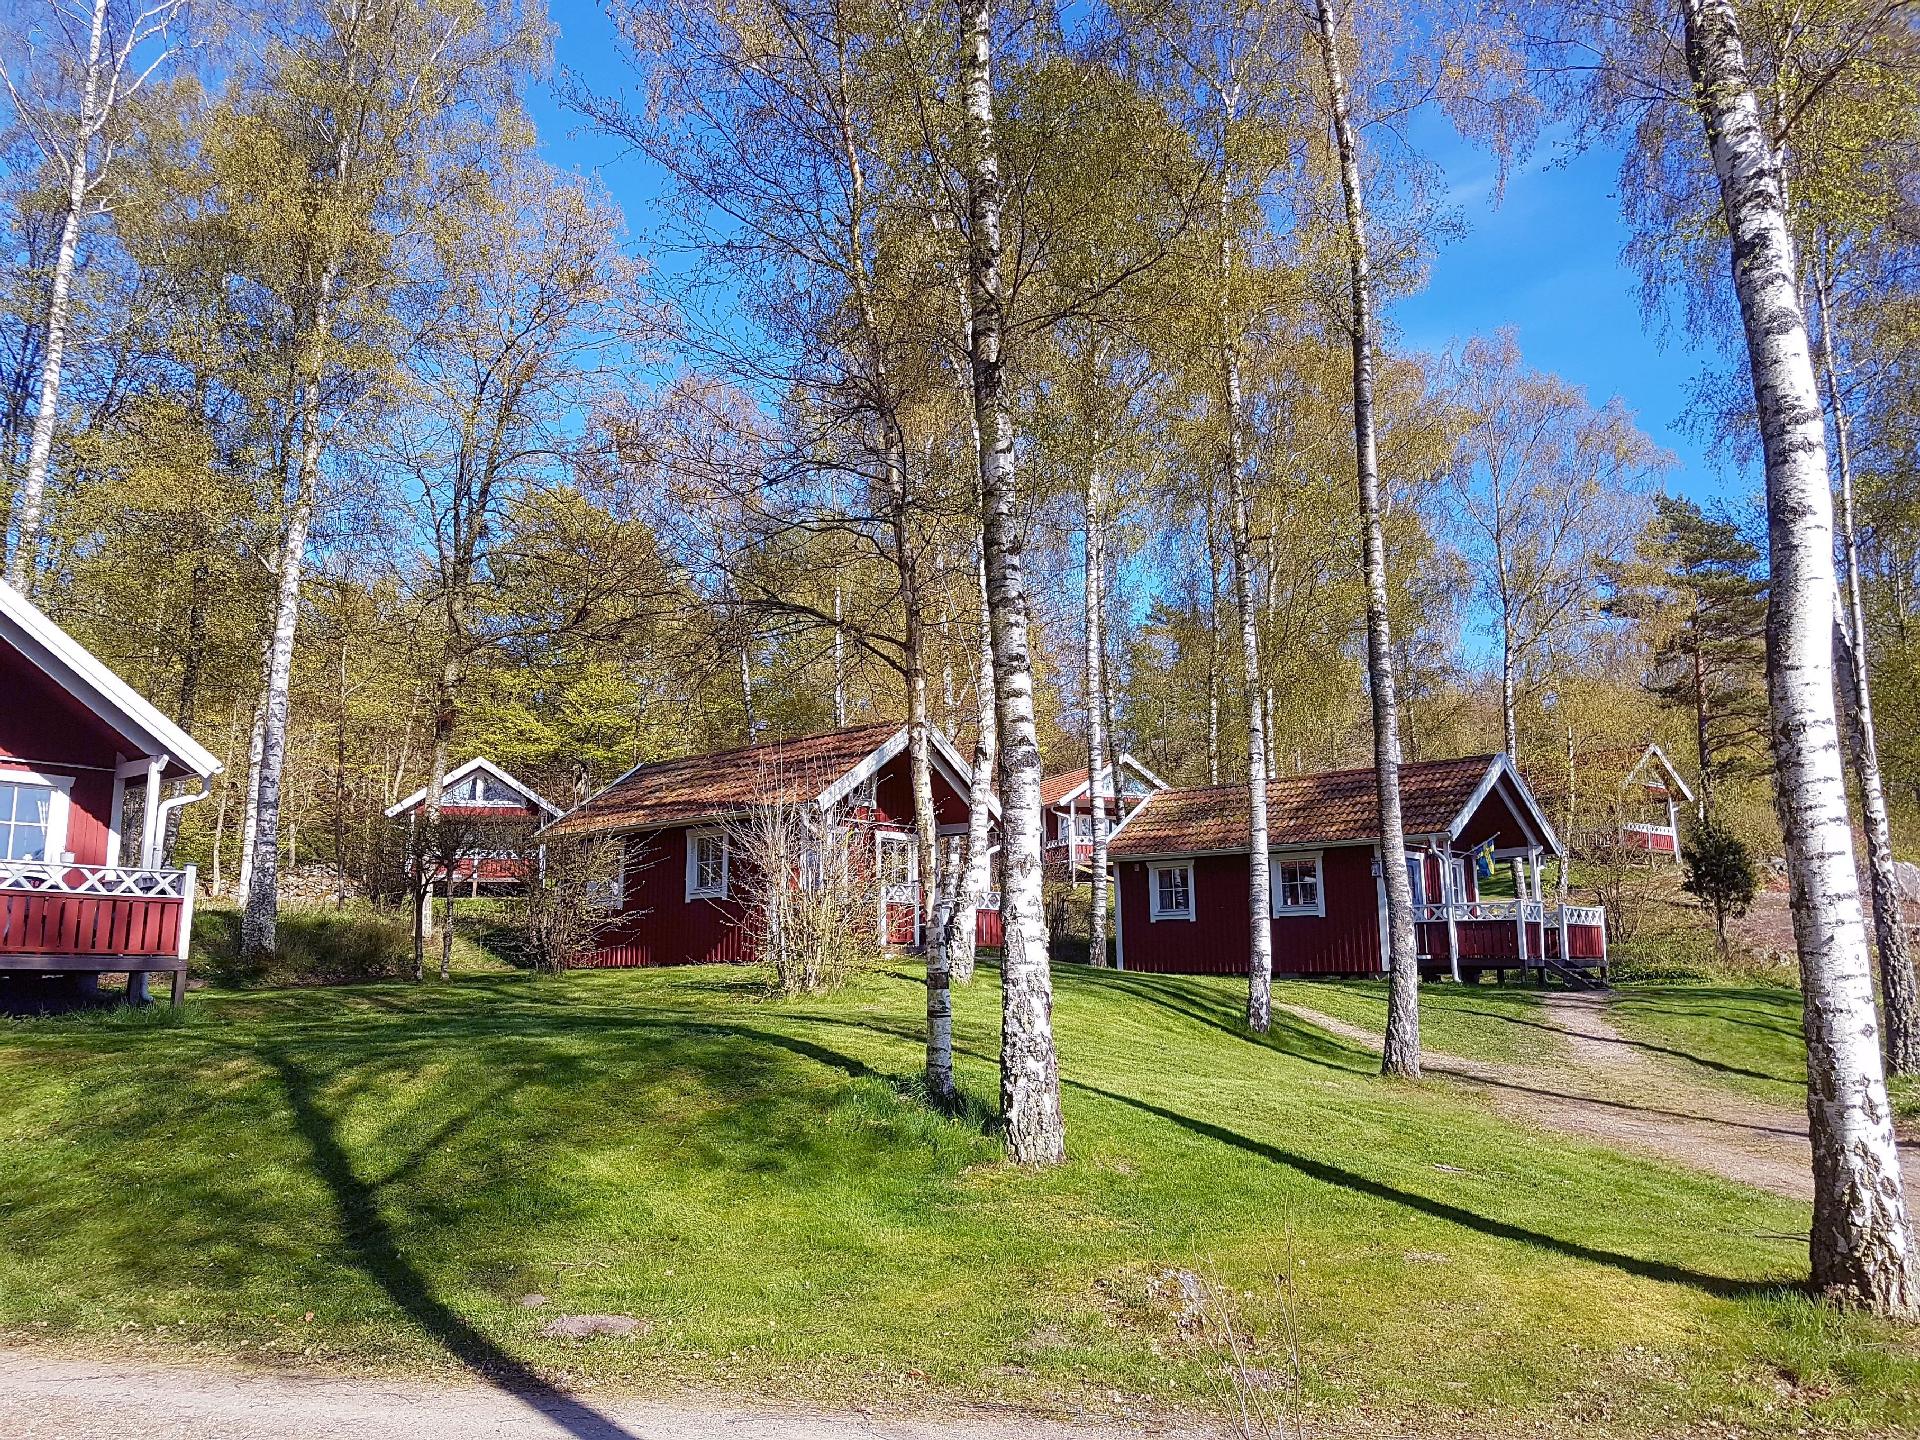 Holzhaus mit überdachter Terrasse Ferienhaus in Schweden